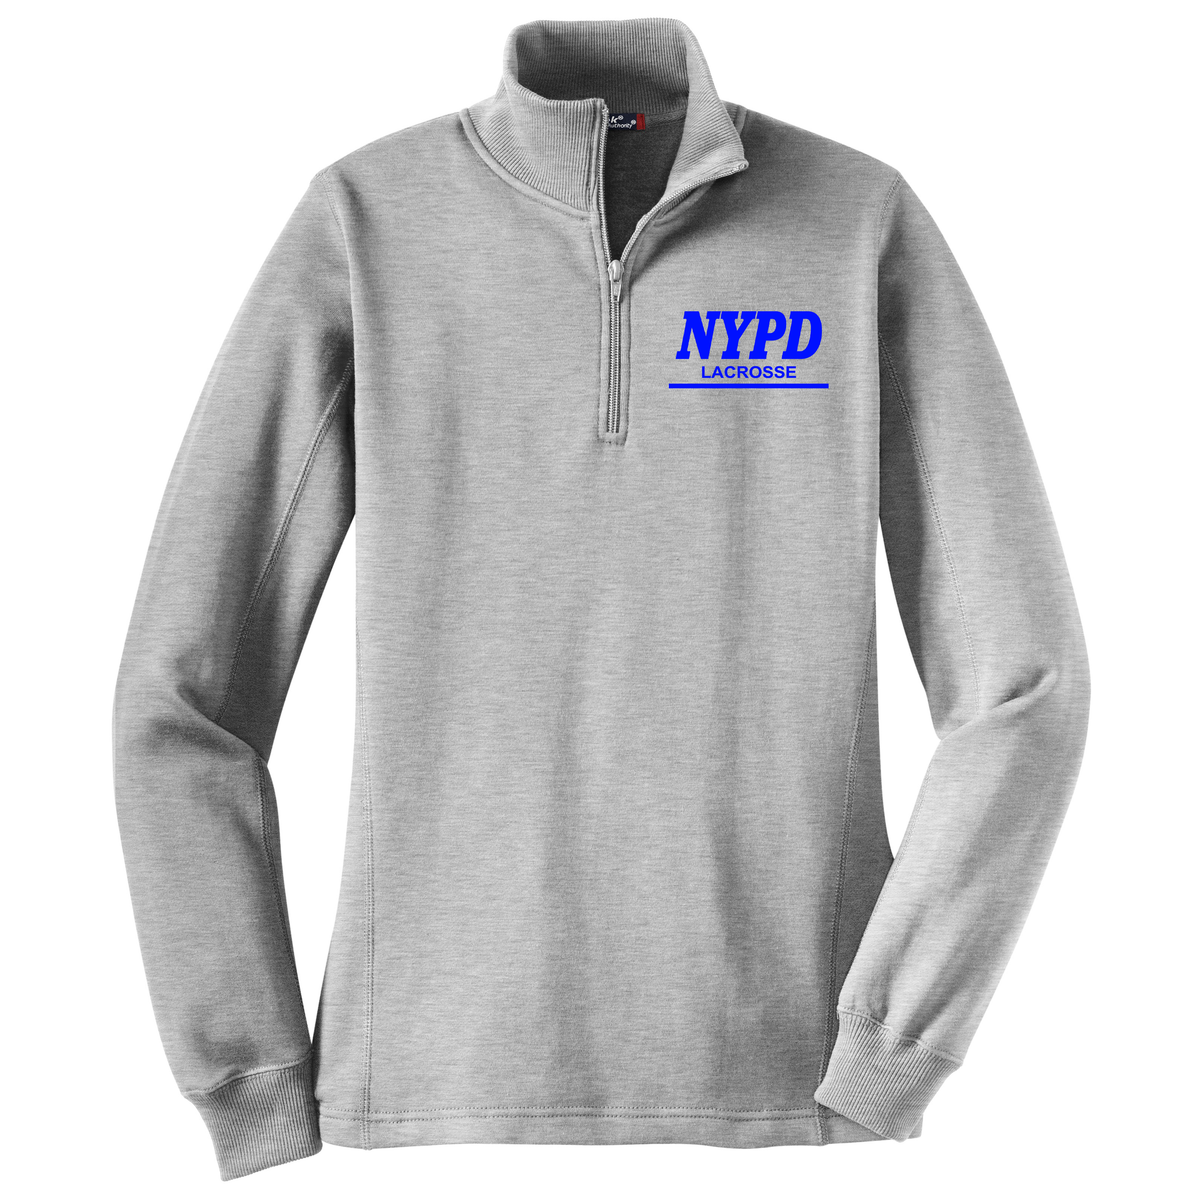 NYPD Lacrosse Women's 1/4 Zip Fleece